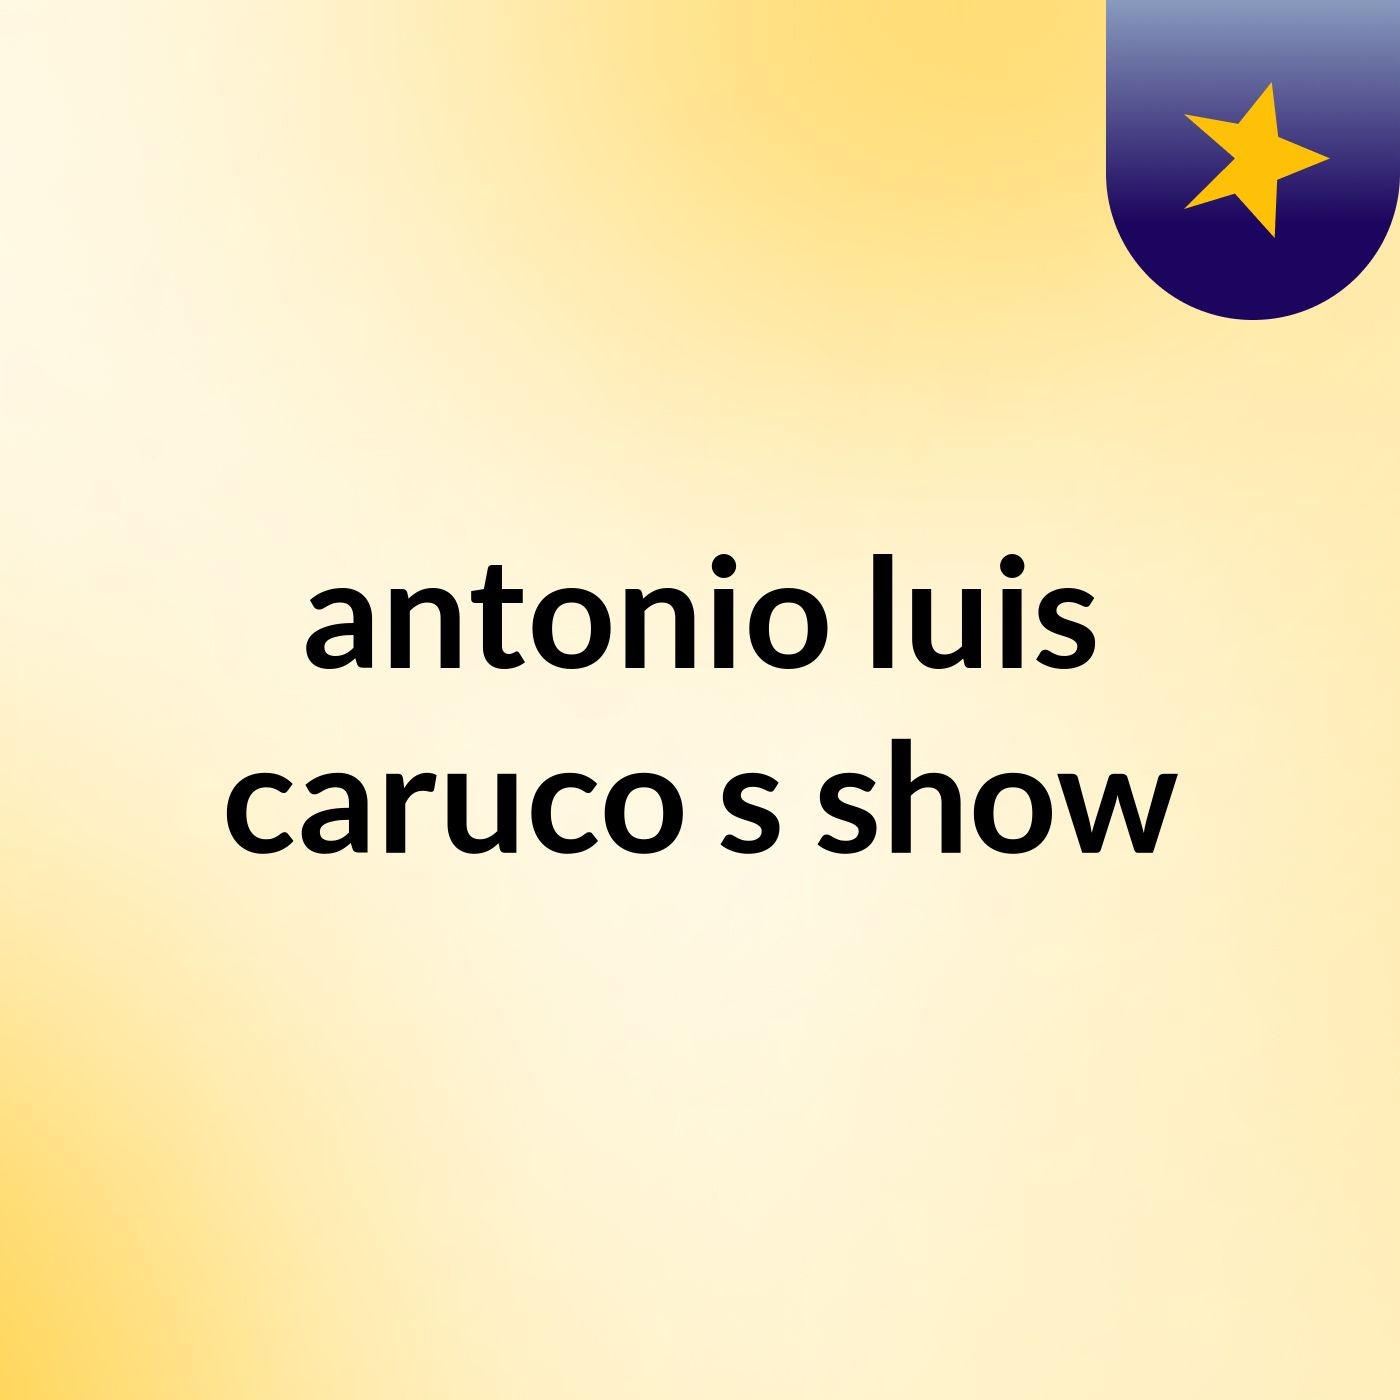 antonio luis caruco's show